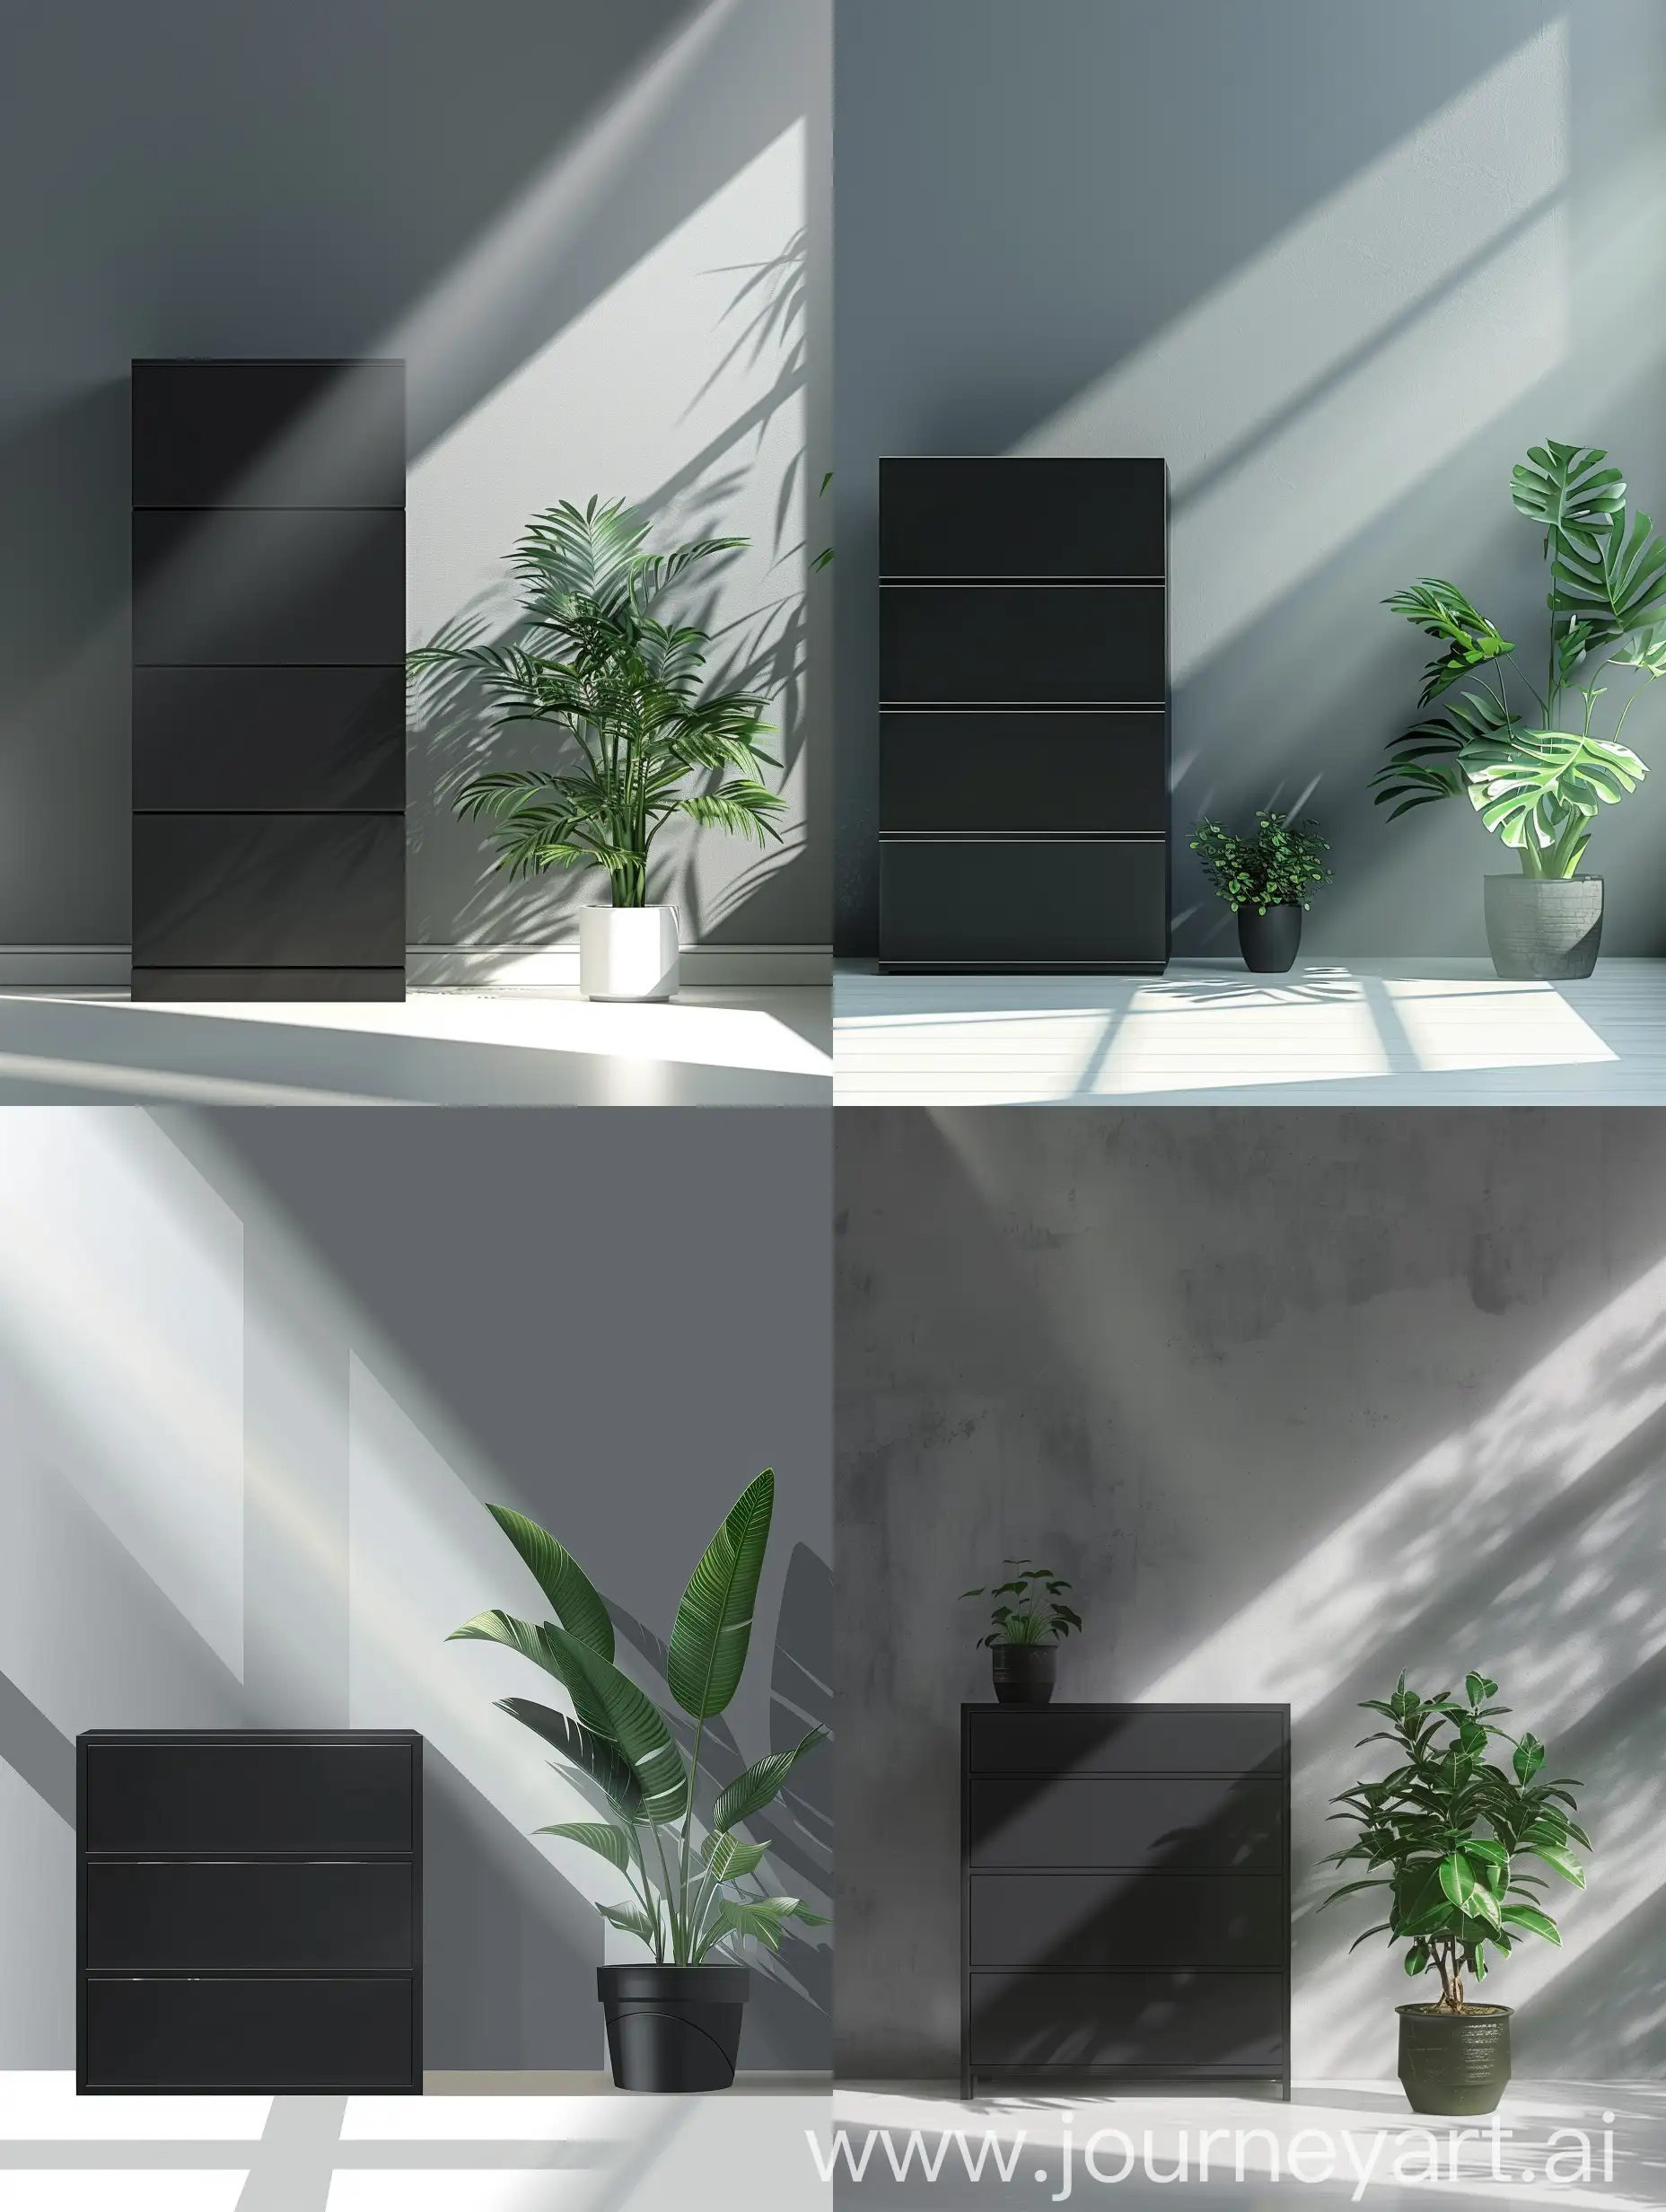 一个放在房间里的黑色三层柜子，灰色墙面，白色地板，柜子旁边由一盆绿植，有一束从窗户穿进来的光打在墙壁上，居中构图。柜子是轴测图视角